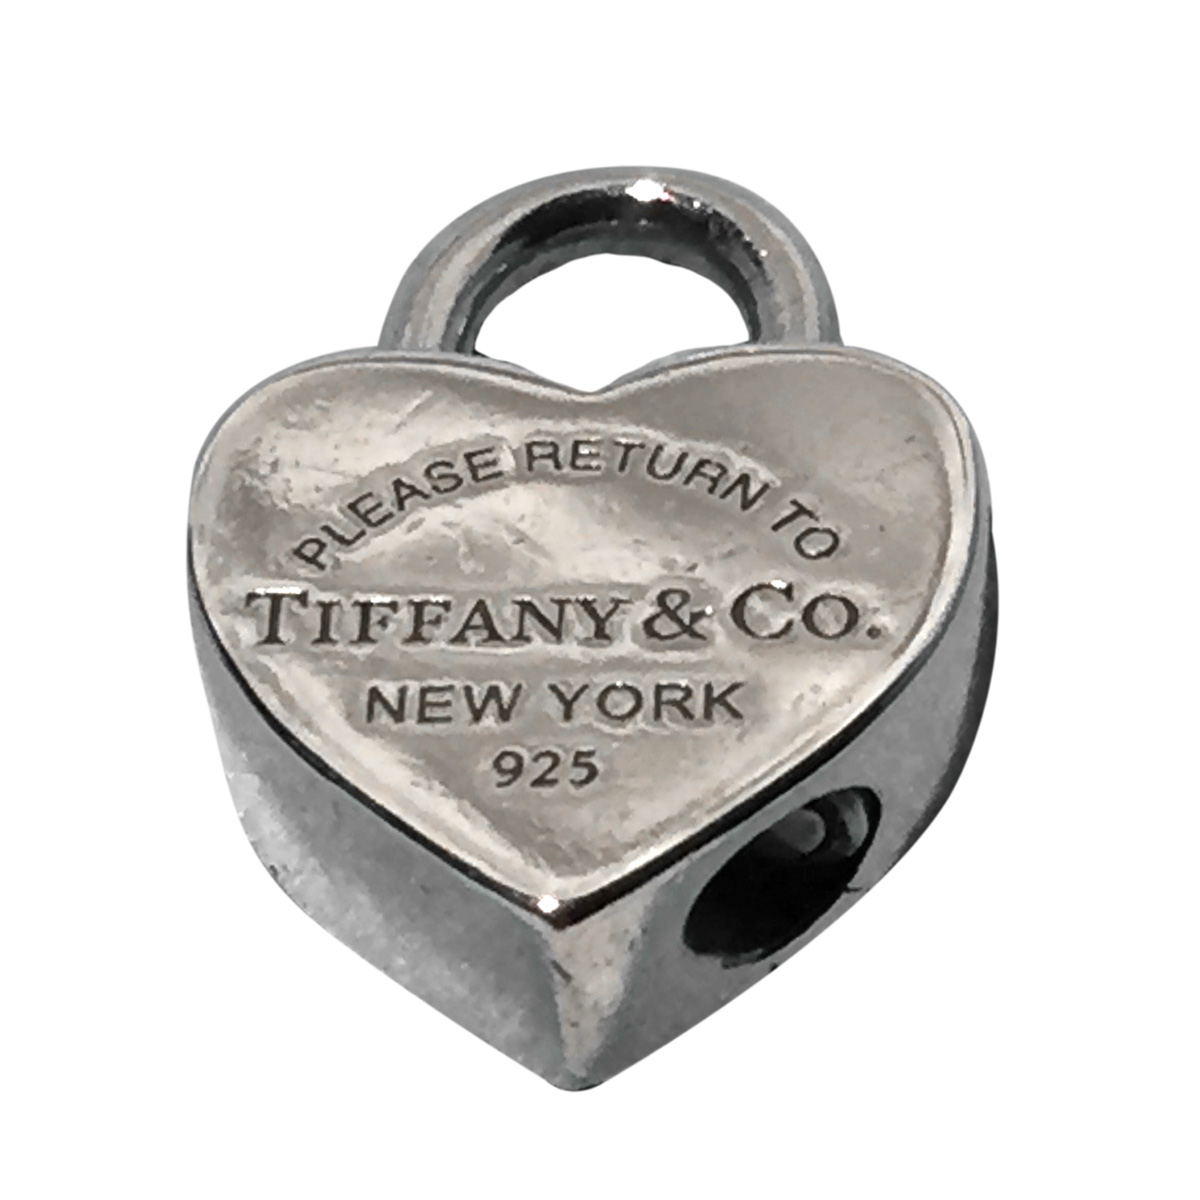 Tiffany & Co. Heart Lock Charm Silver Pendant Necklace Tiffany